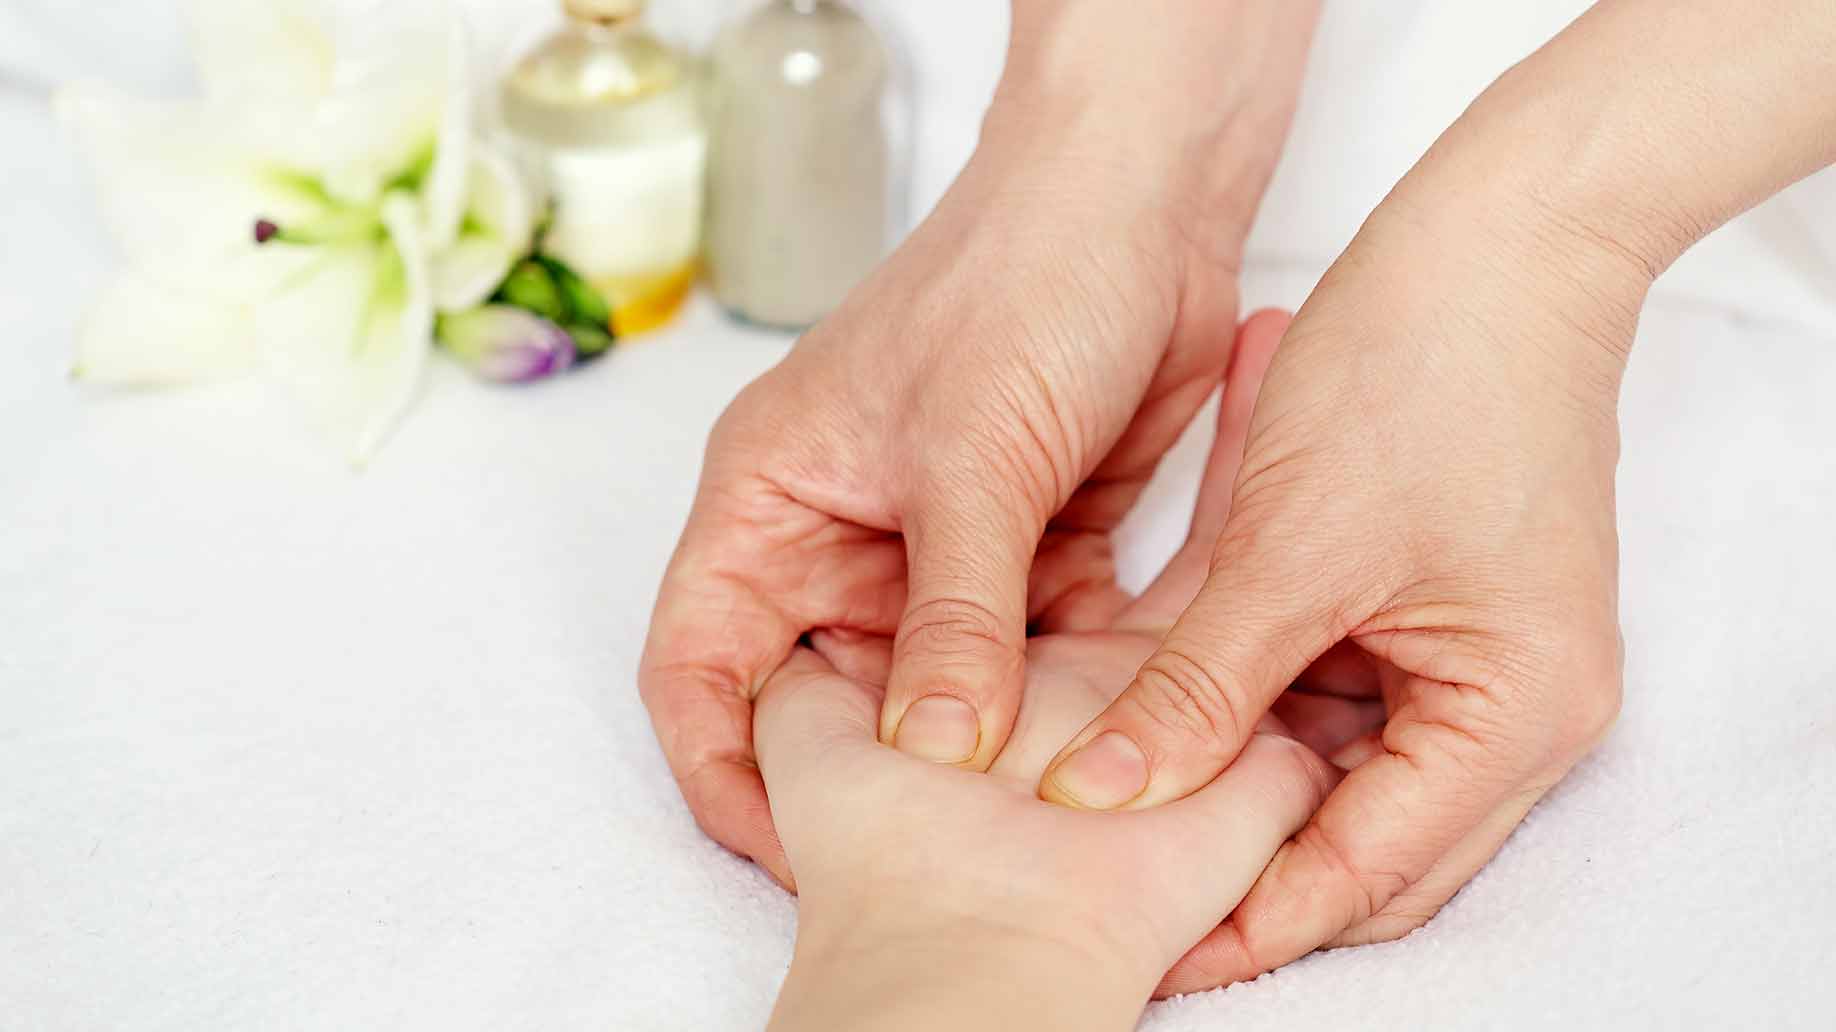 acupressure massage hand tissue massage pressure points headaches migraines natural remedies